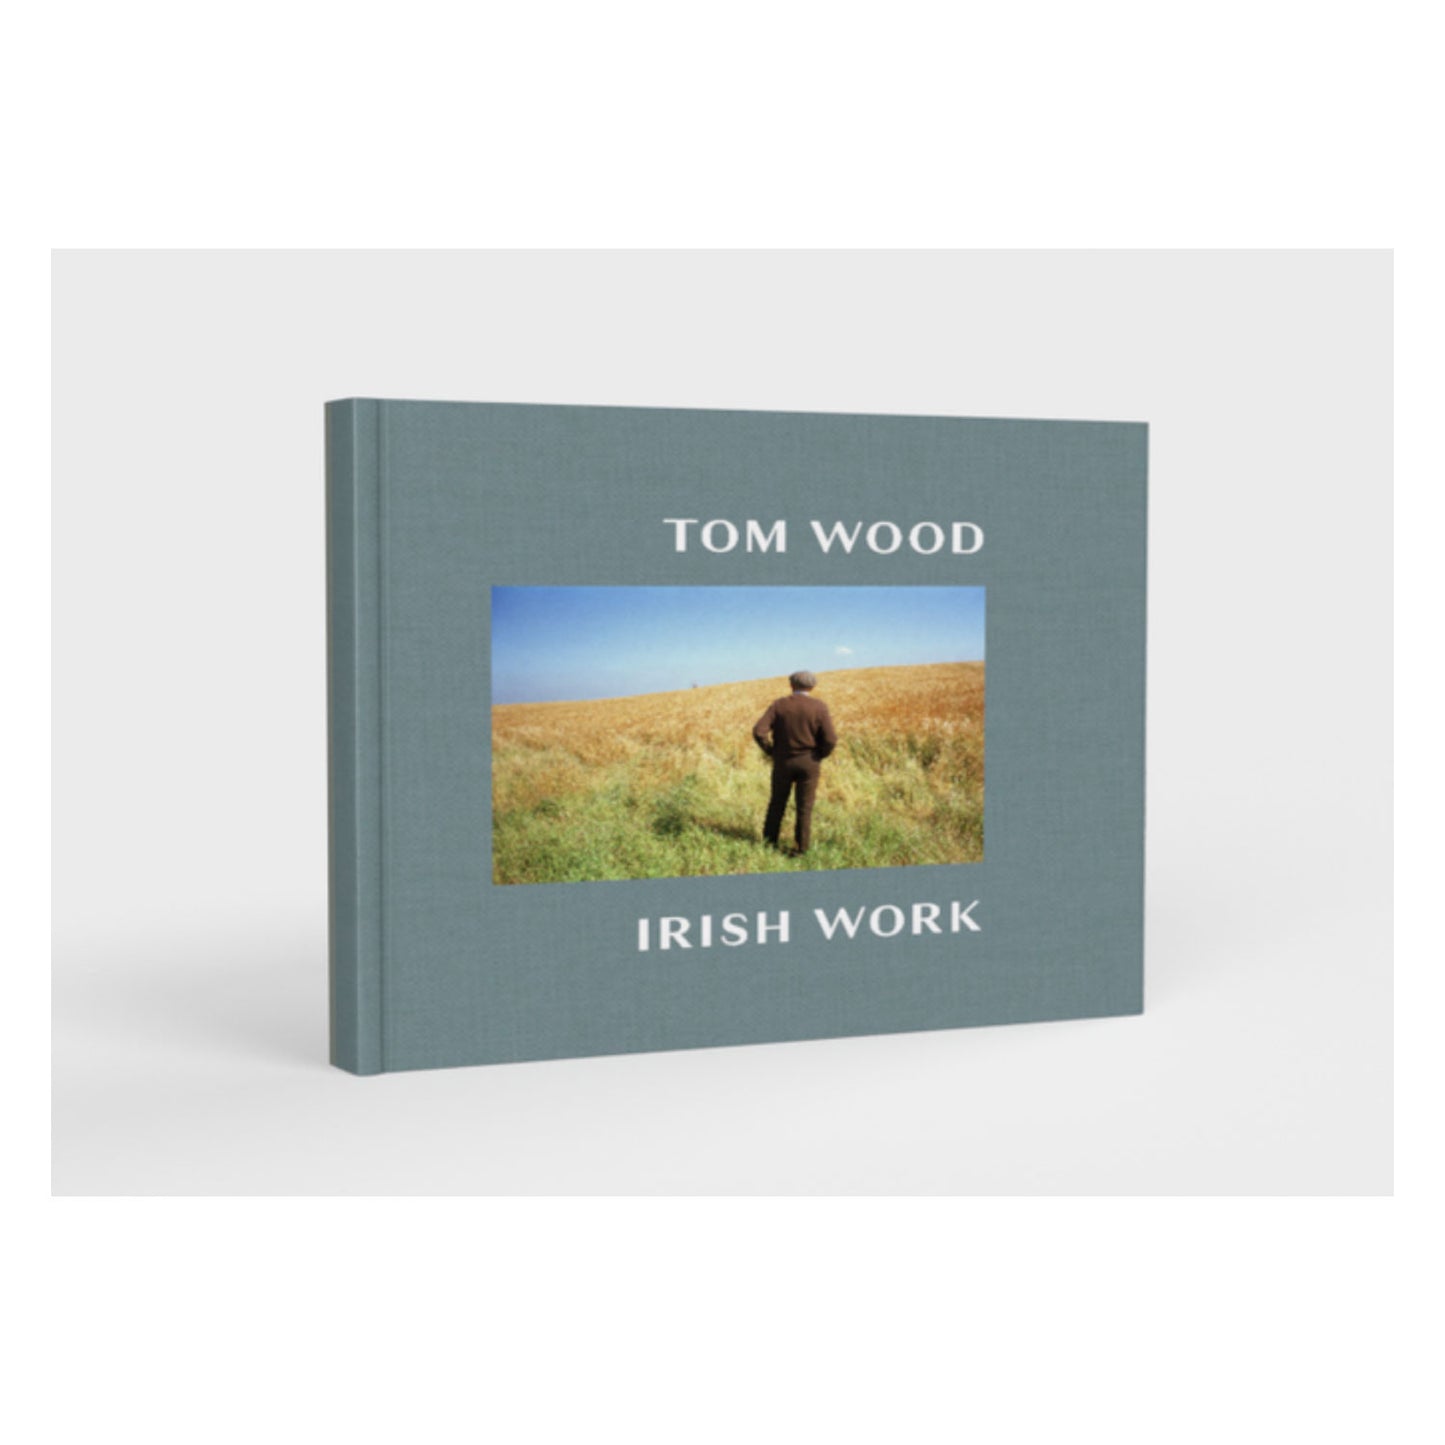 Irish Work by Tom Wood